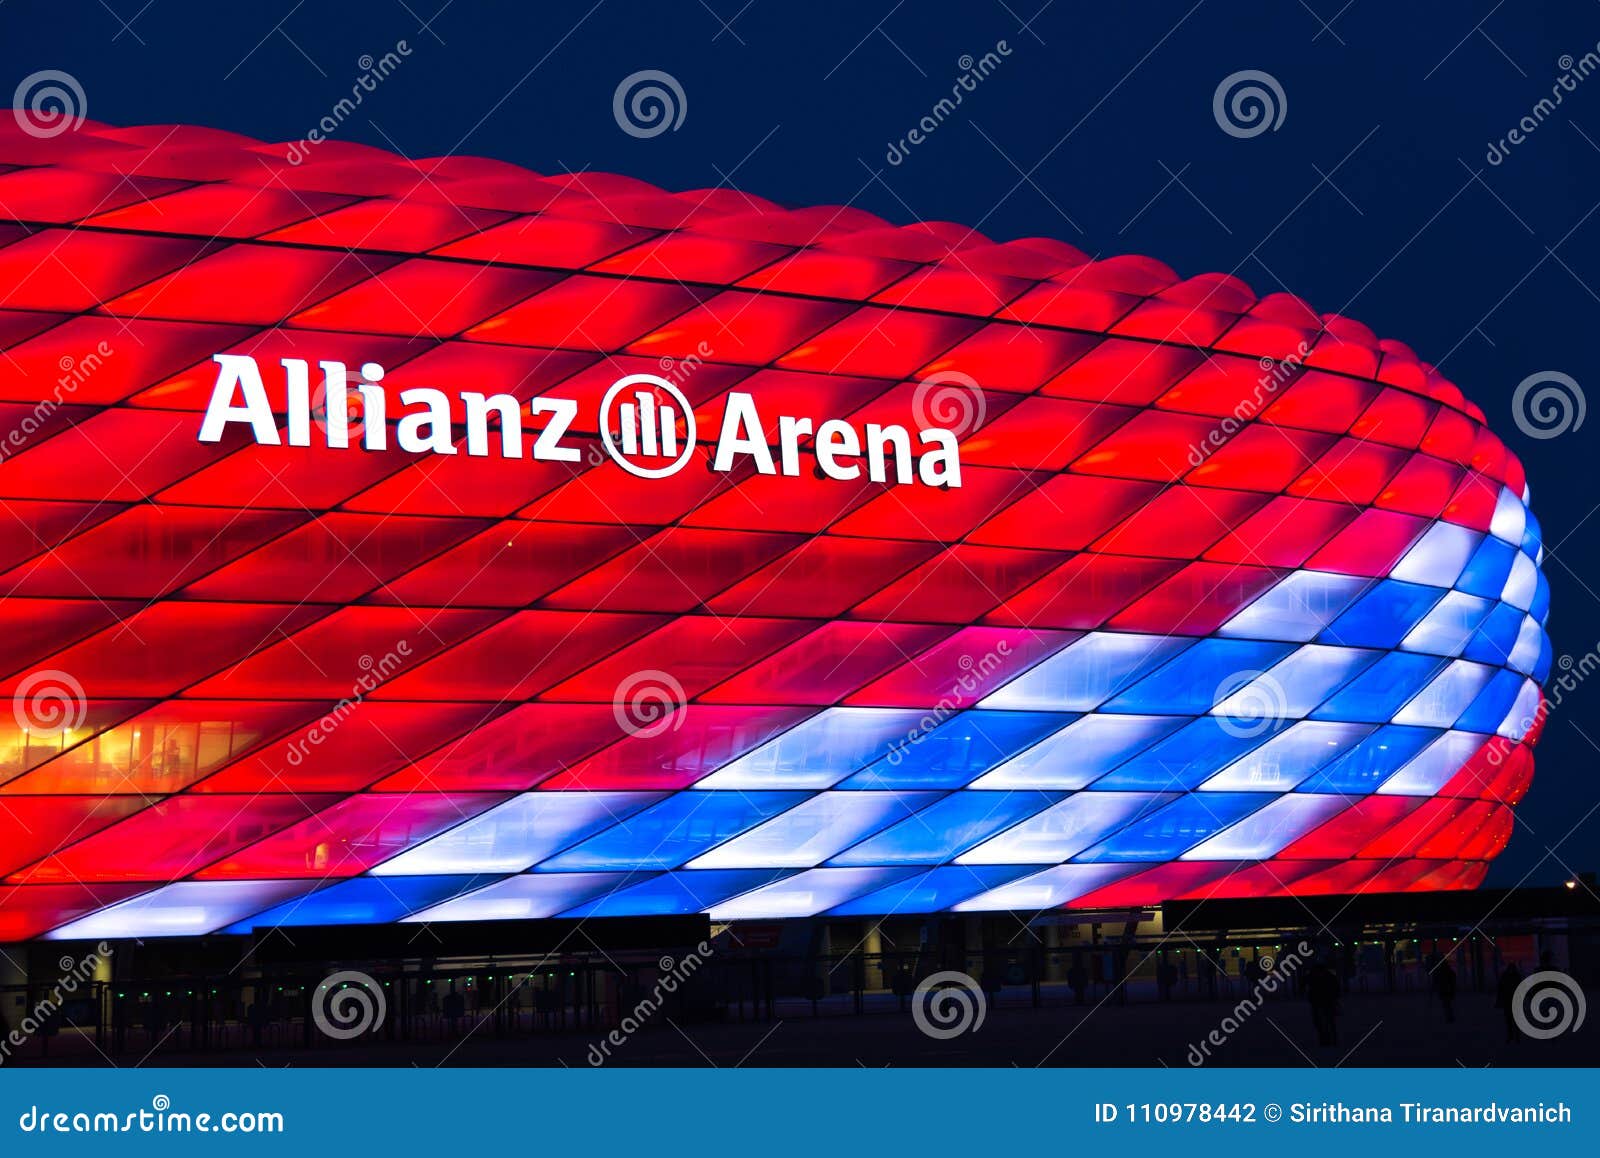 Spezielle Beleuchtung Die Allianz Arena Für Fc Bayern Munich118 Geburtstag Redaktionelles